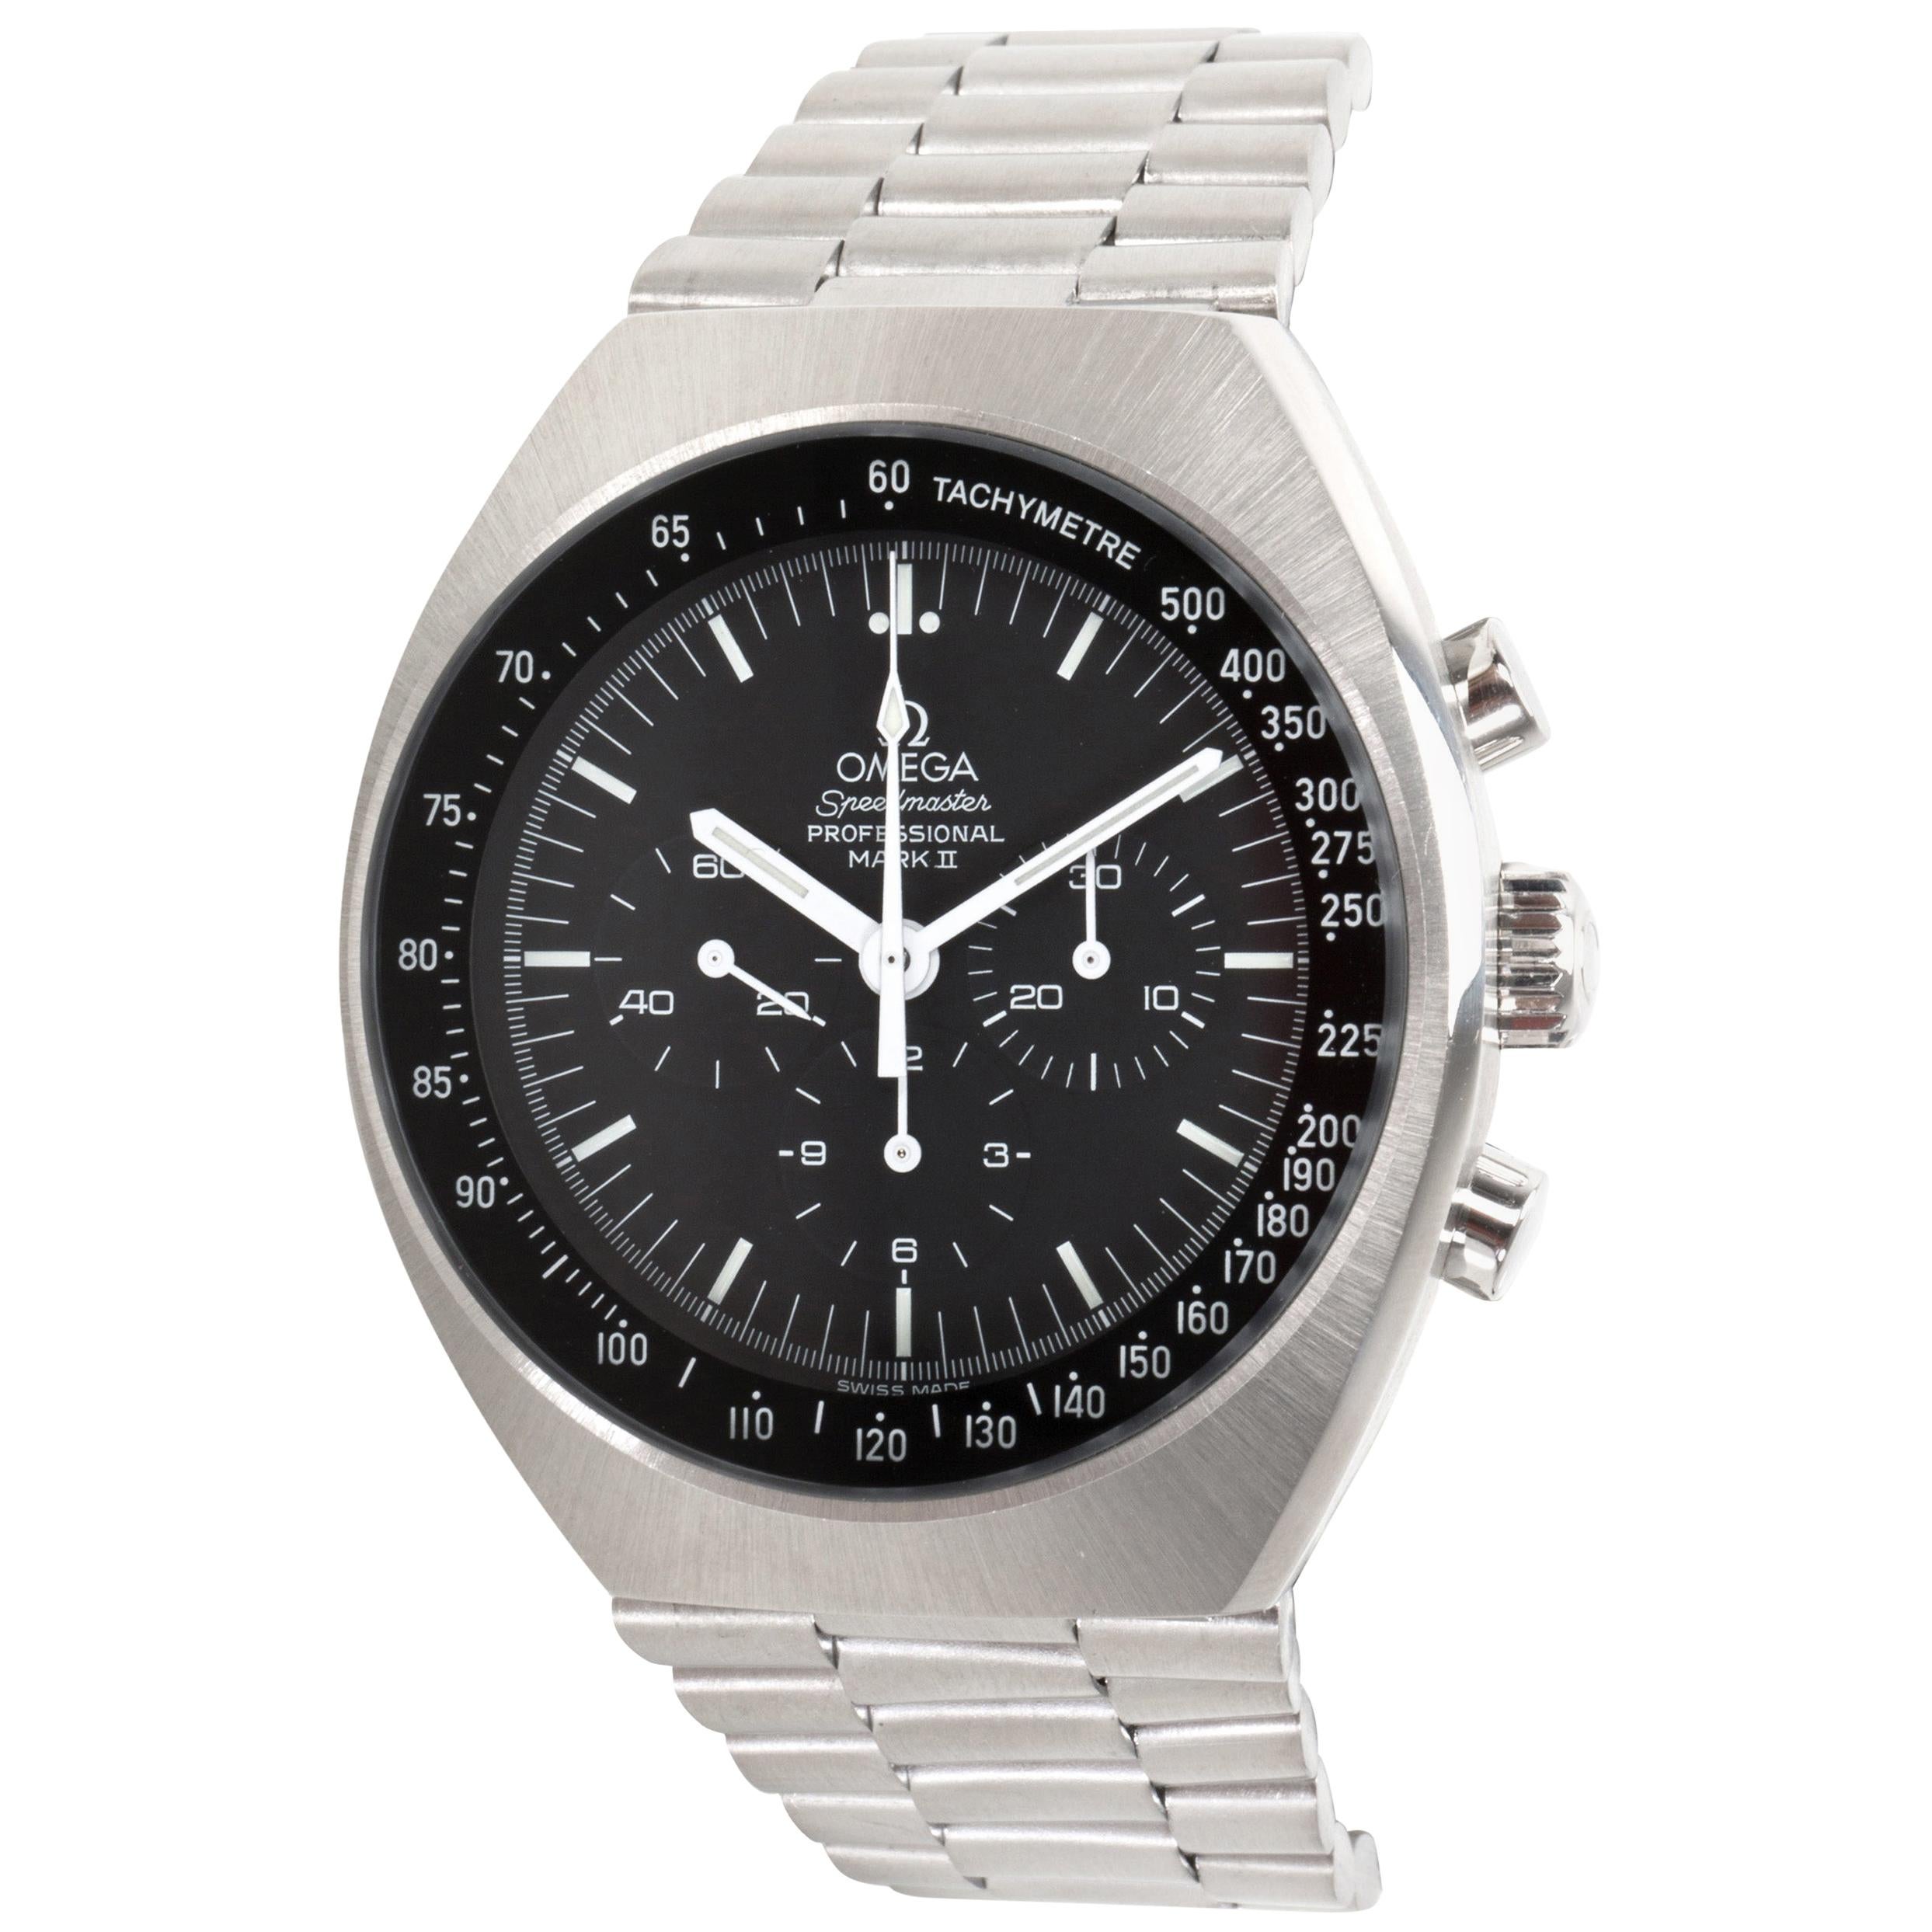 Vintage Omega Speedmaster Mark II 1450014 Men's Watch in Stainless Steel